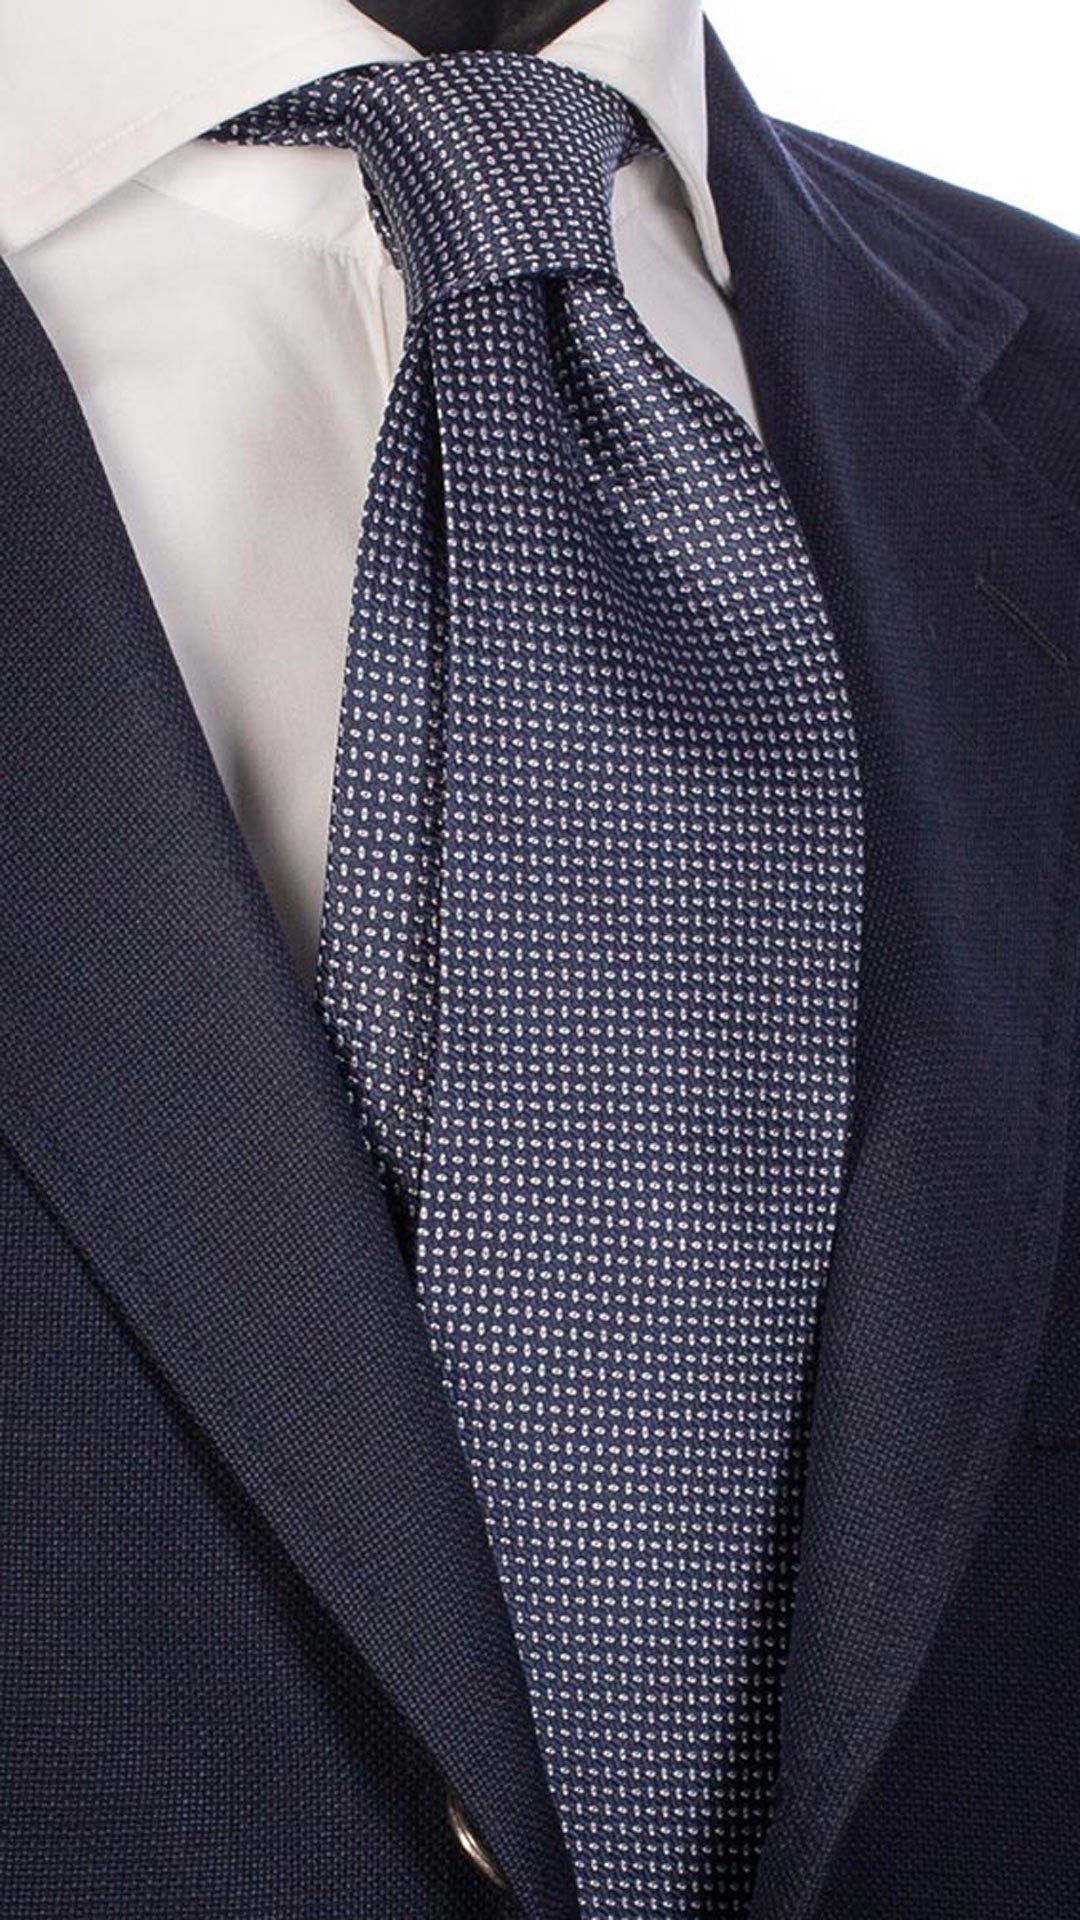 Cravatta da Cerimonia di Seta Blu Fantasia Bianca CY2621 Made in Italy Graffeo Cravatte